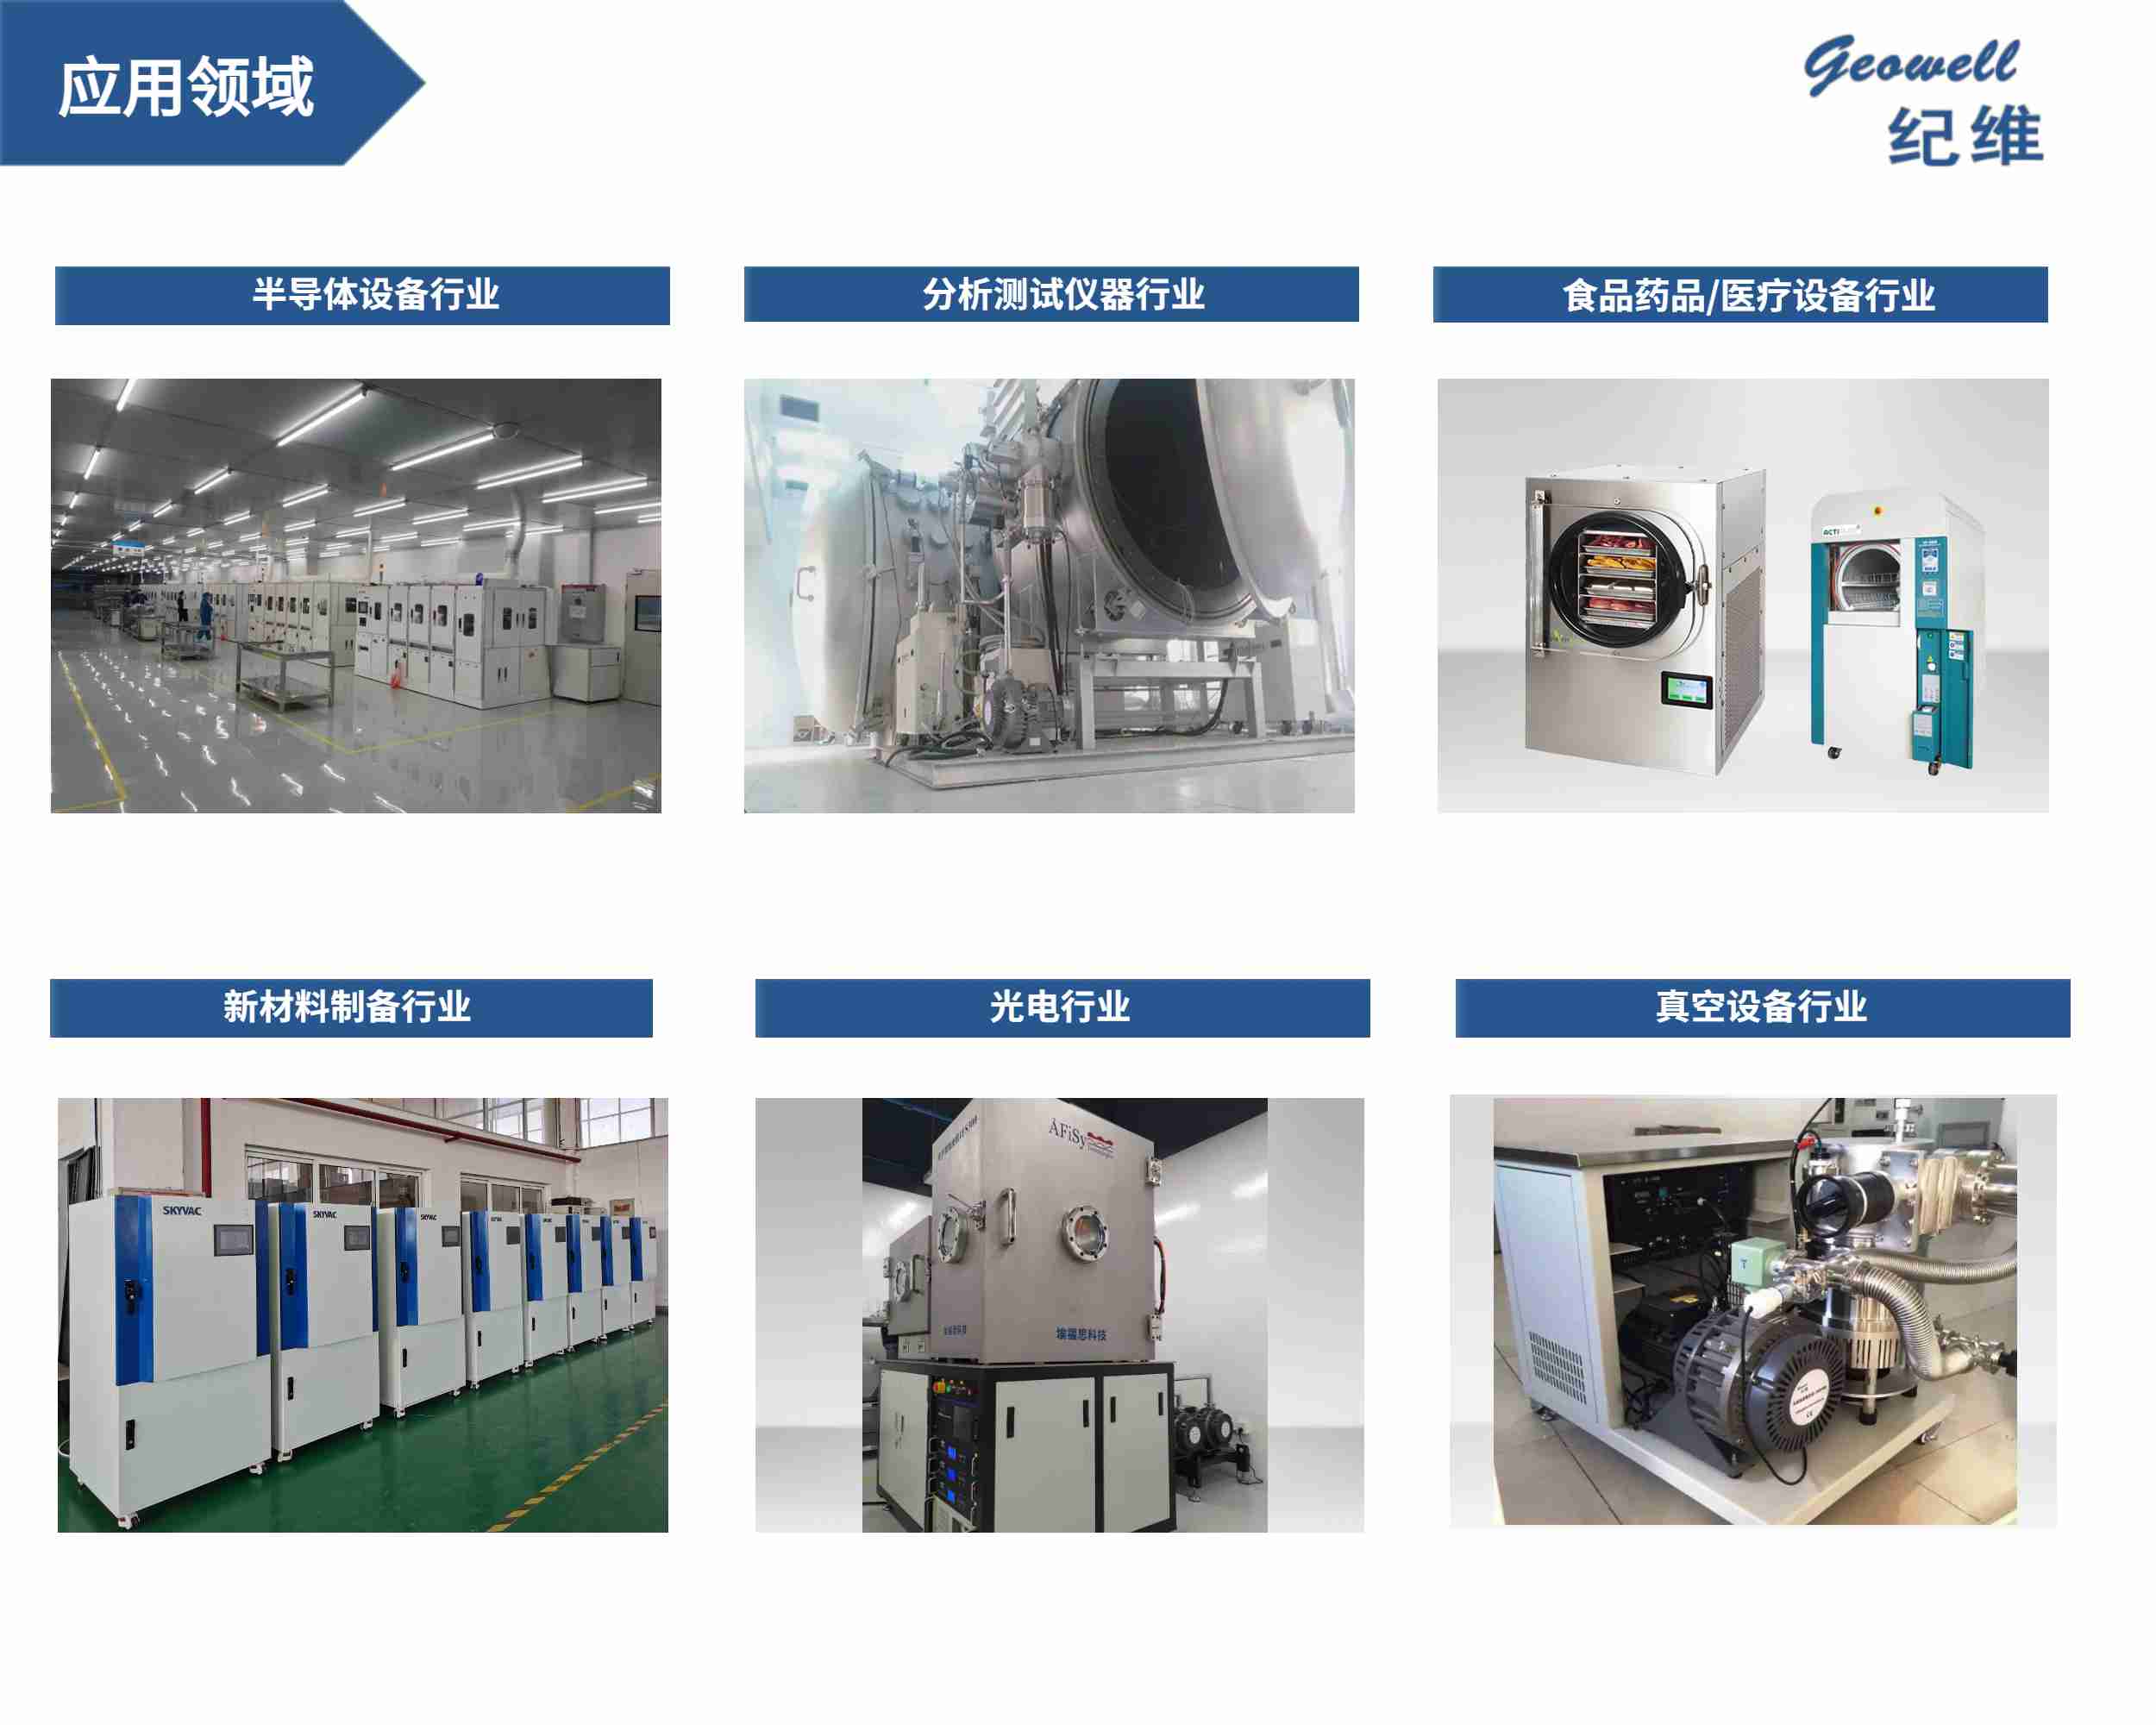 Geowell vacuum Pump applications in various industries